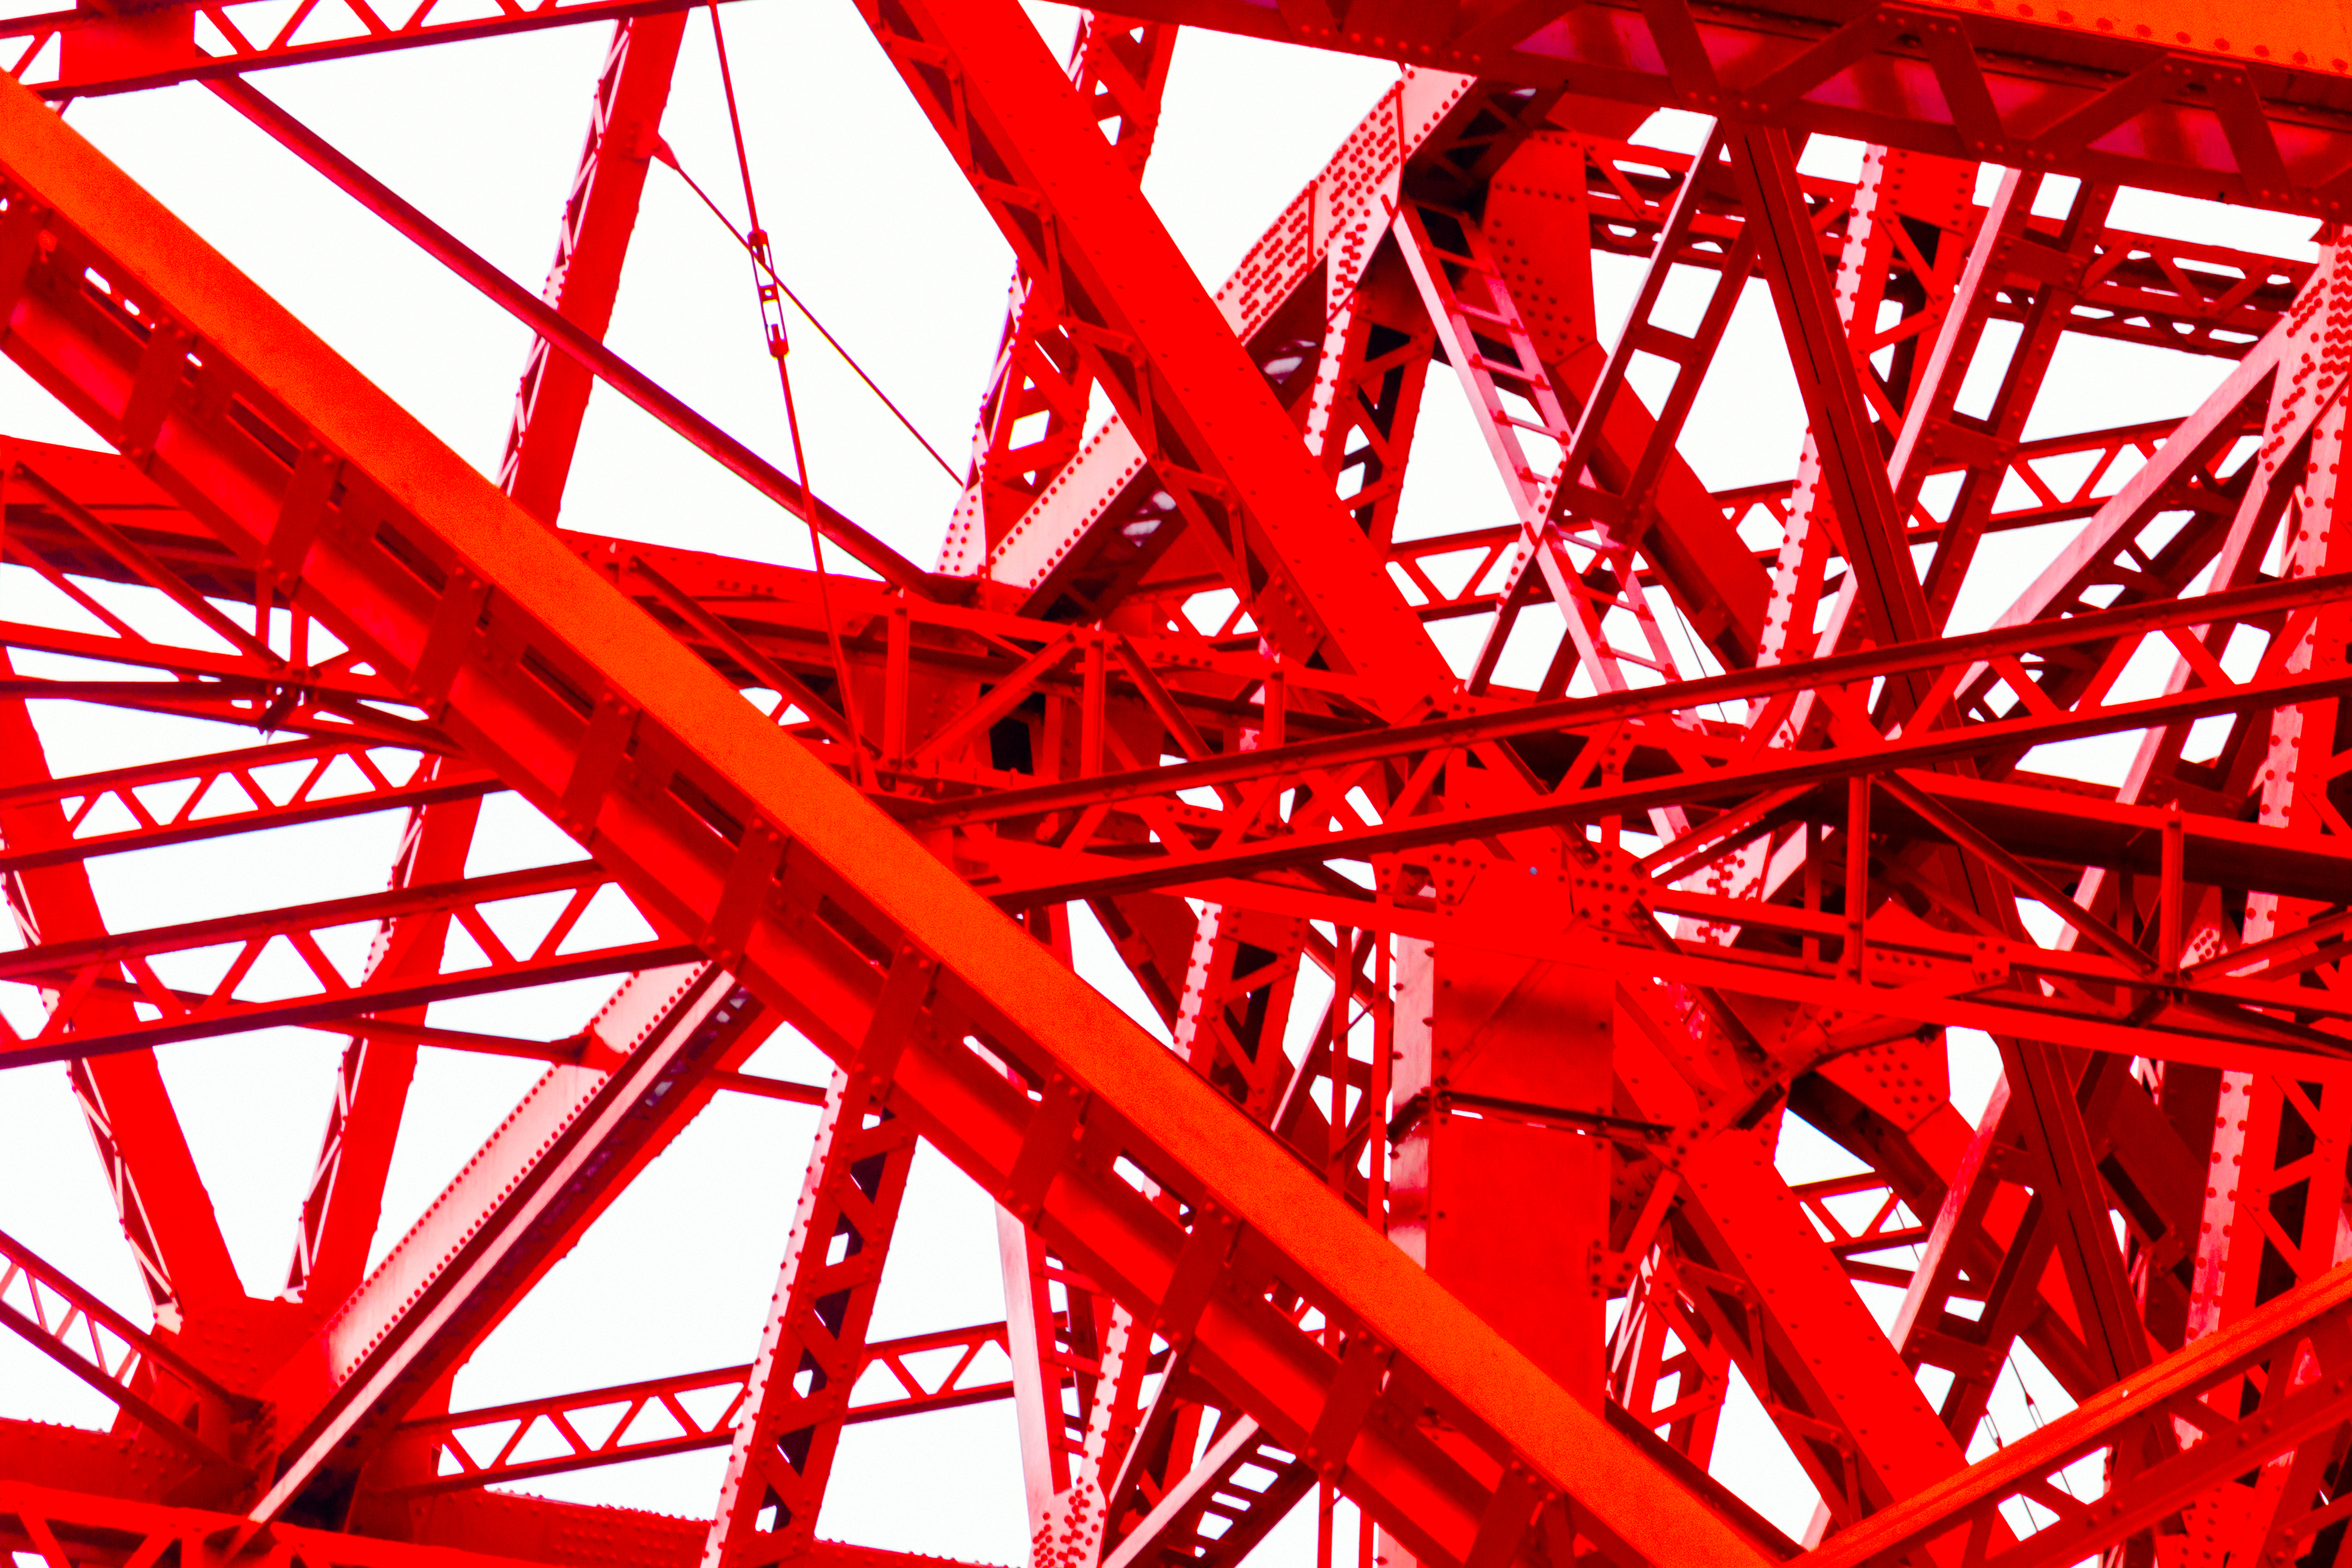 Tokyo Tower Neon Genesis Evangelion Red 3830x2554